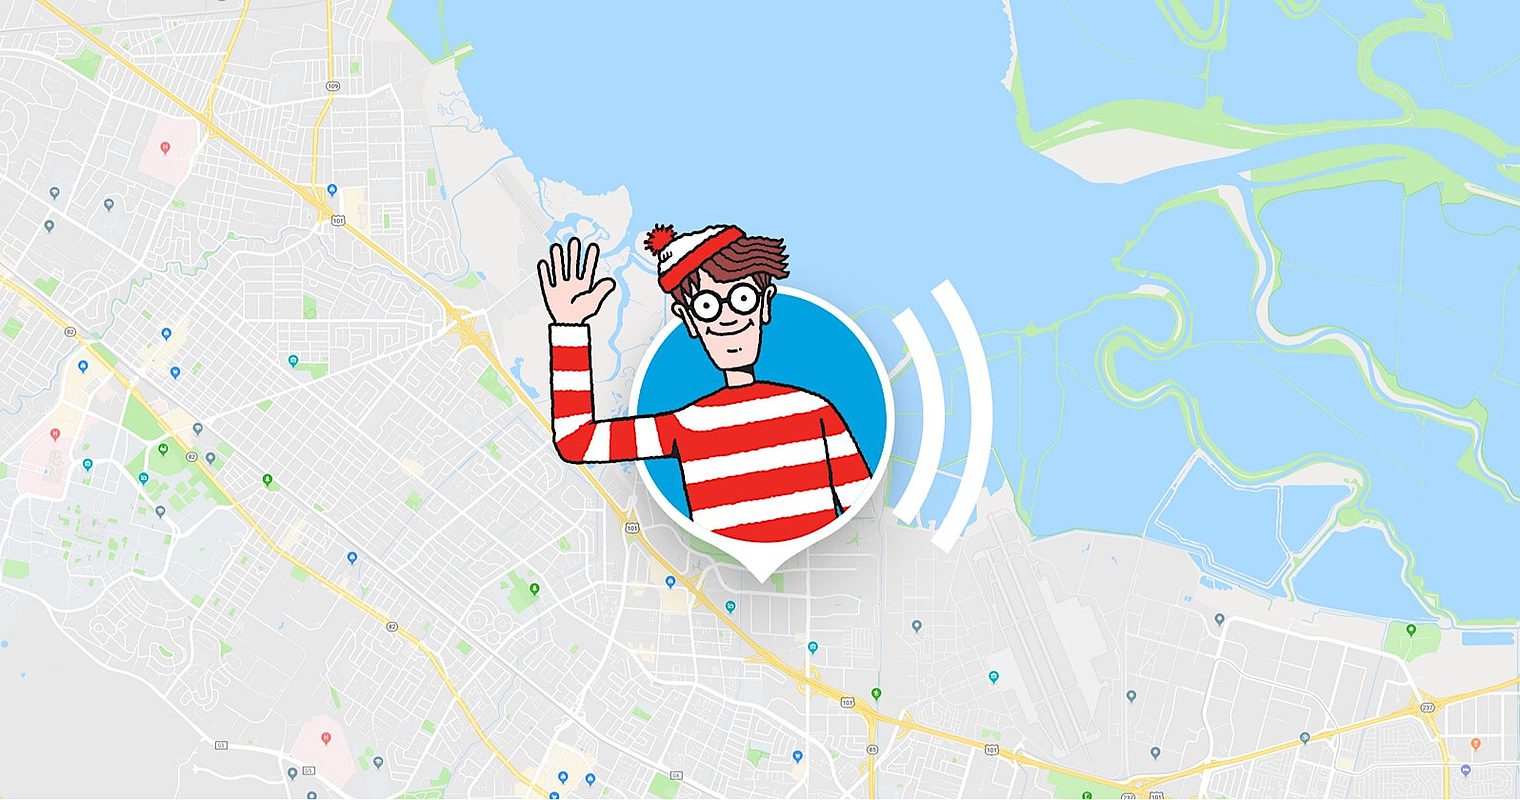 Google April Fools Joke: Find Waldo in Google Maps